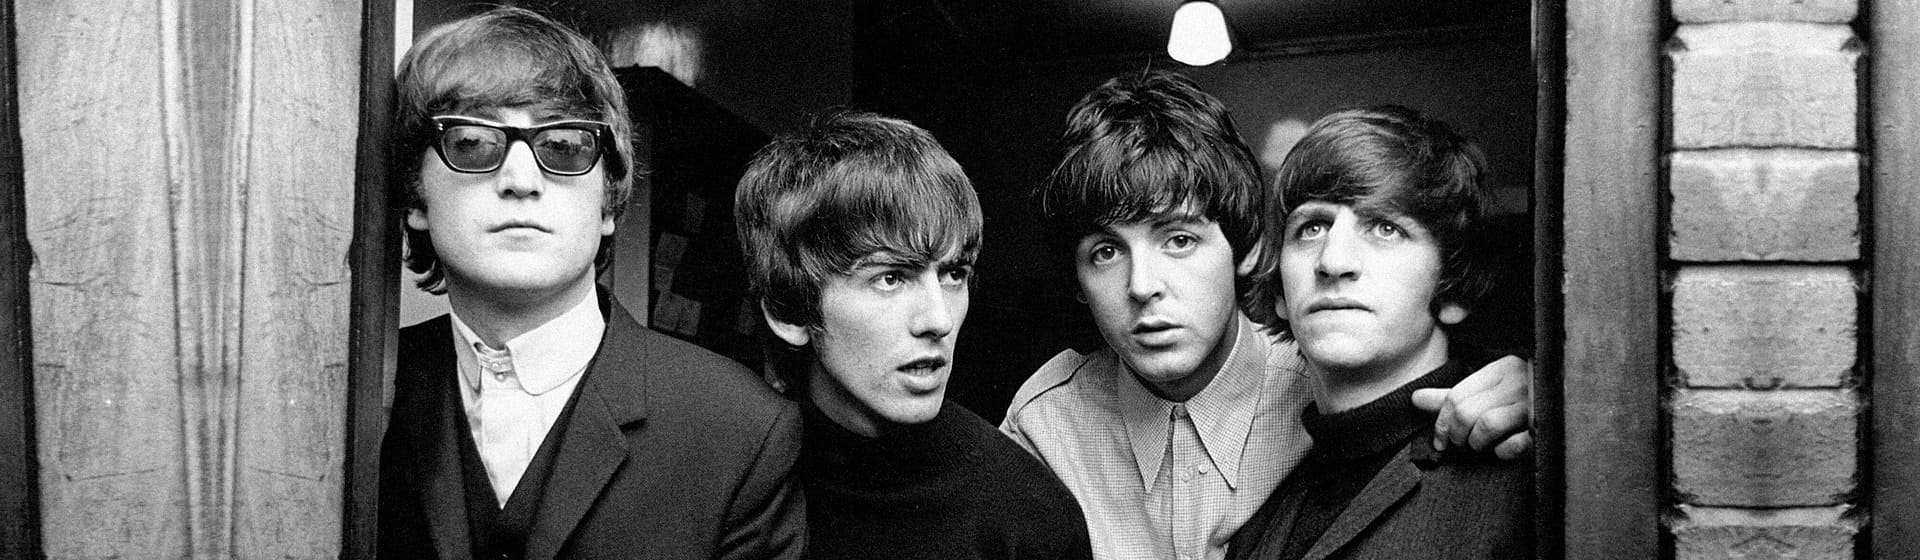 The Beatles - Мерч и одежда с атрибутикой